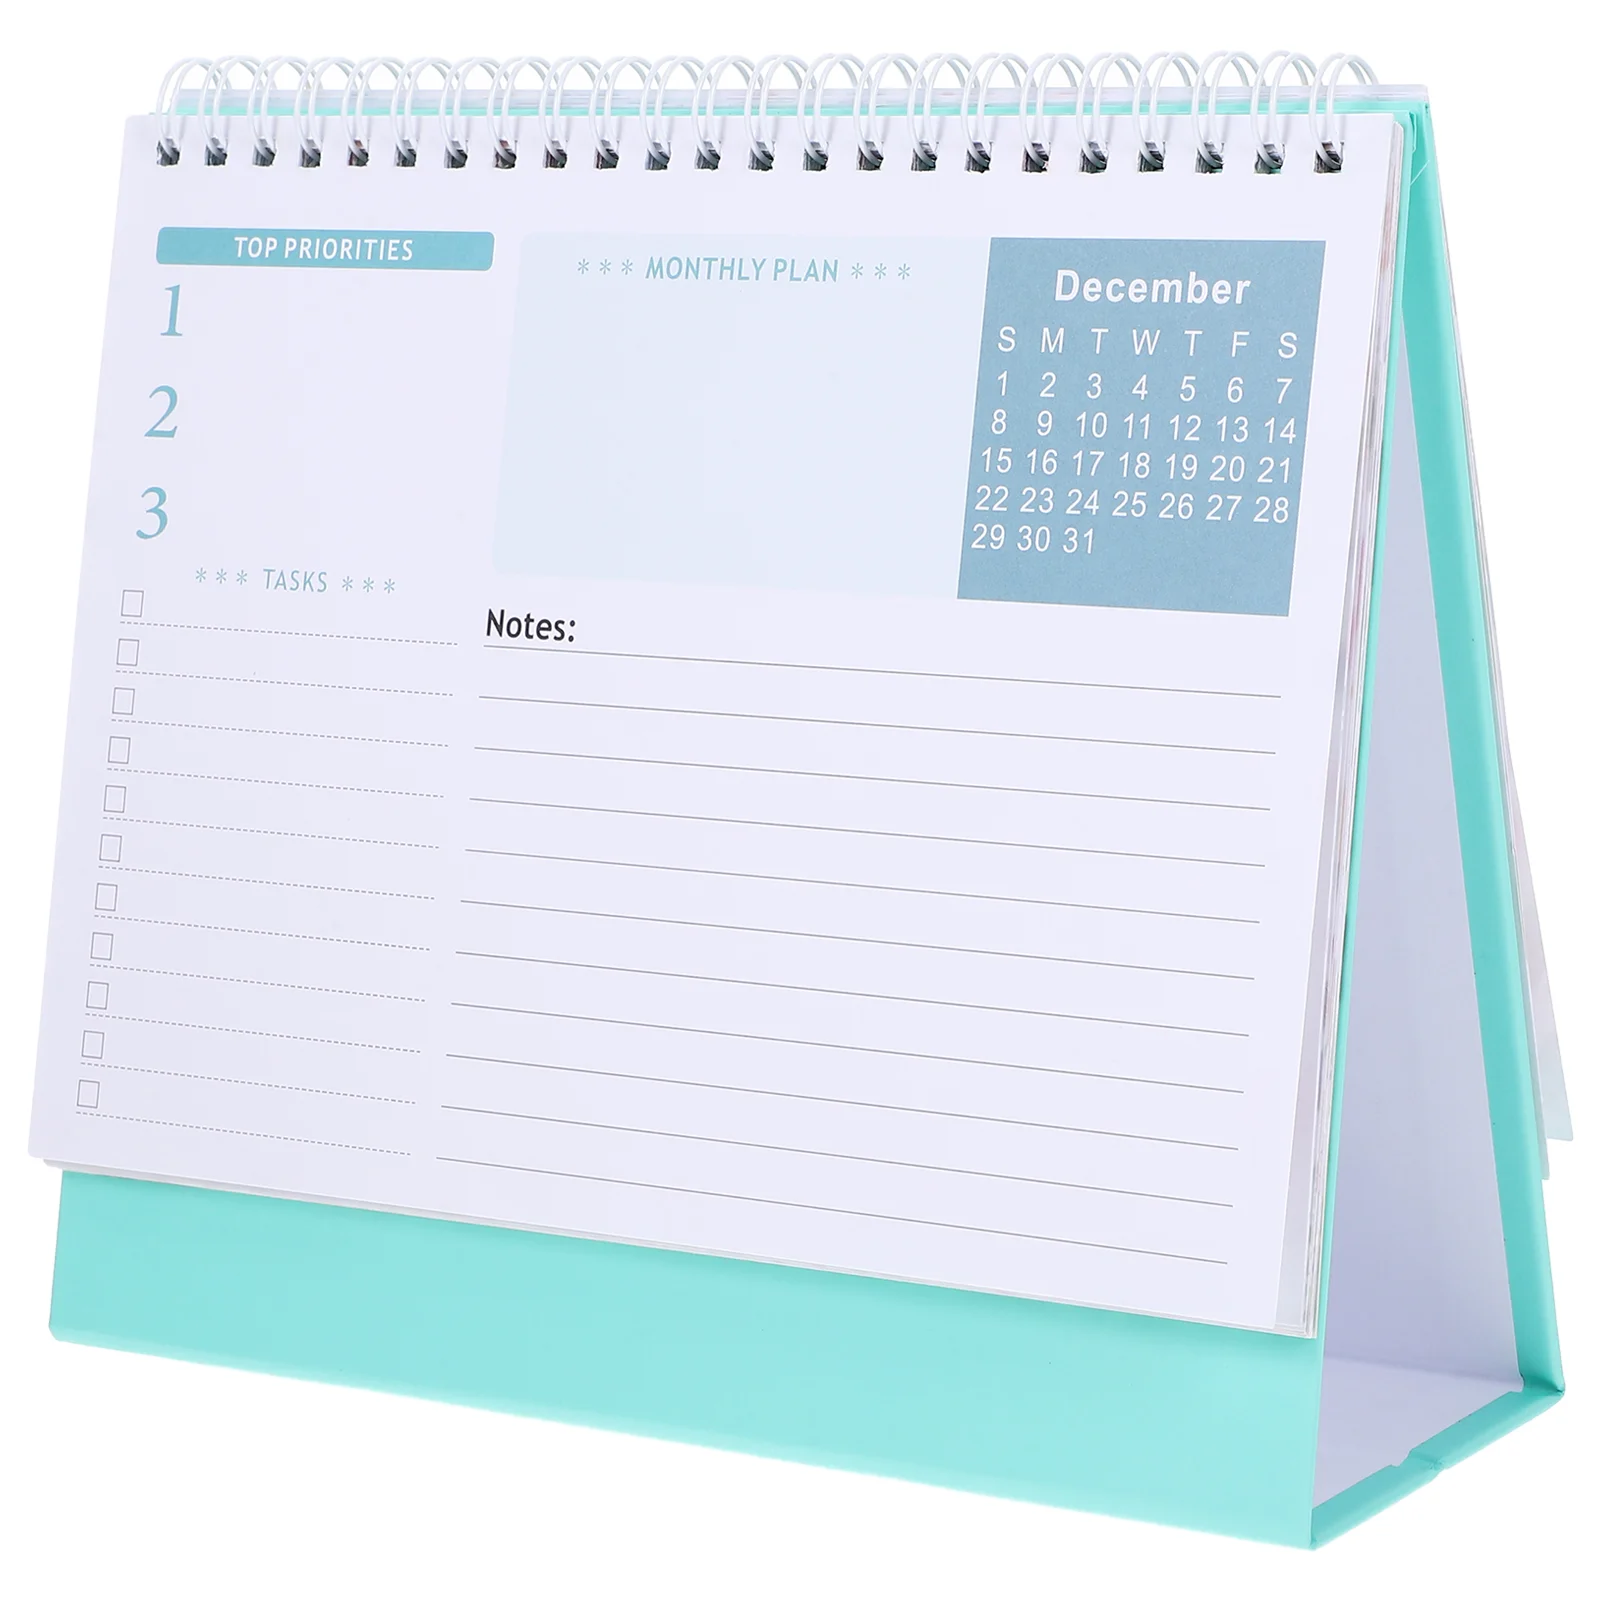 

Настольный календарь, настольная подставка, флип-календарь, декор для рабочего стола, календарь для рабочего стола, календарь для рабочего стола на английском языке